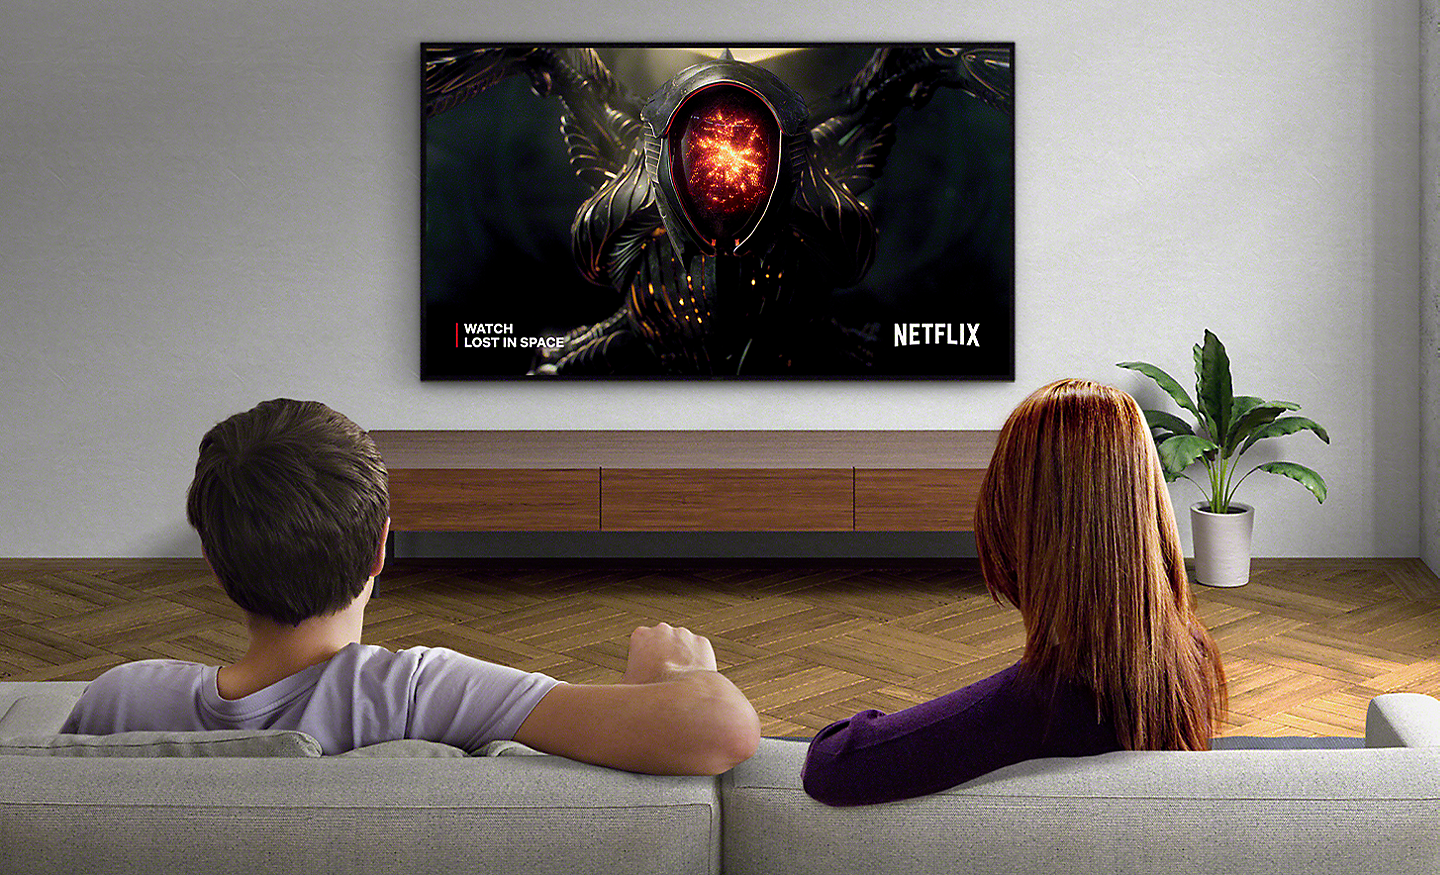 Изображение на двойка в хол, гледащи Netflix на монтиран на стена телевизор BRAVIA TV.